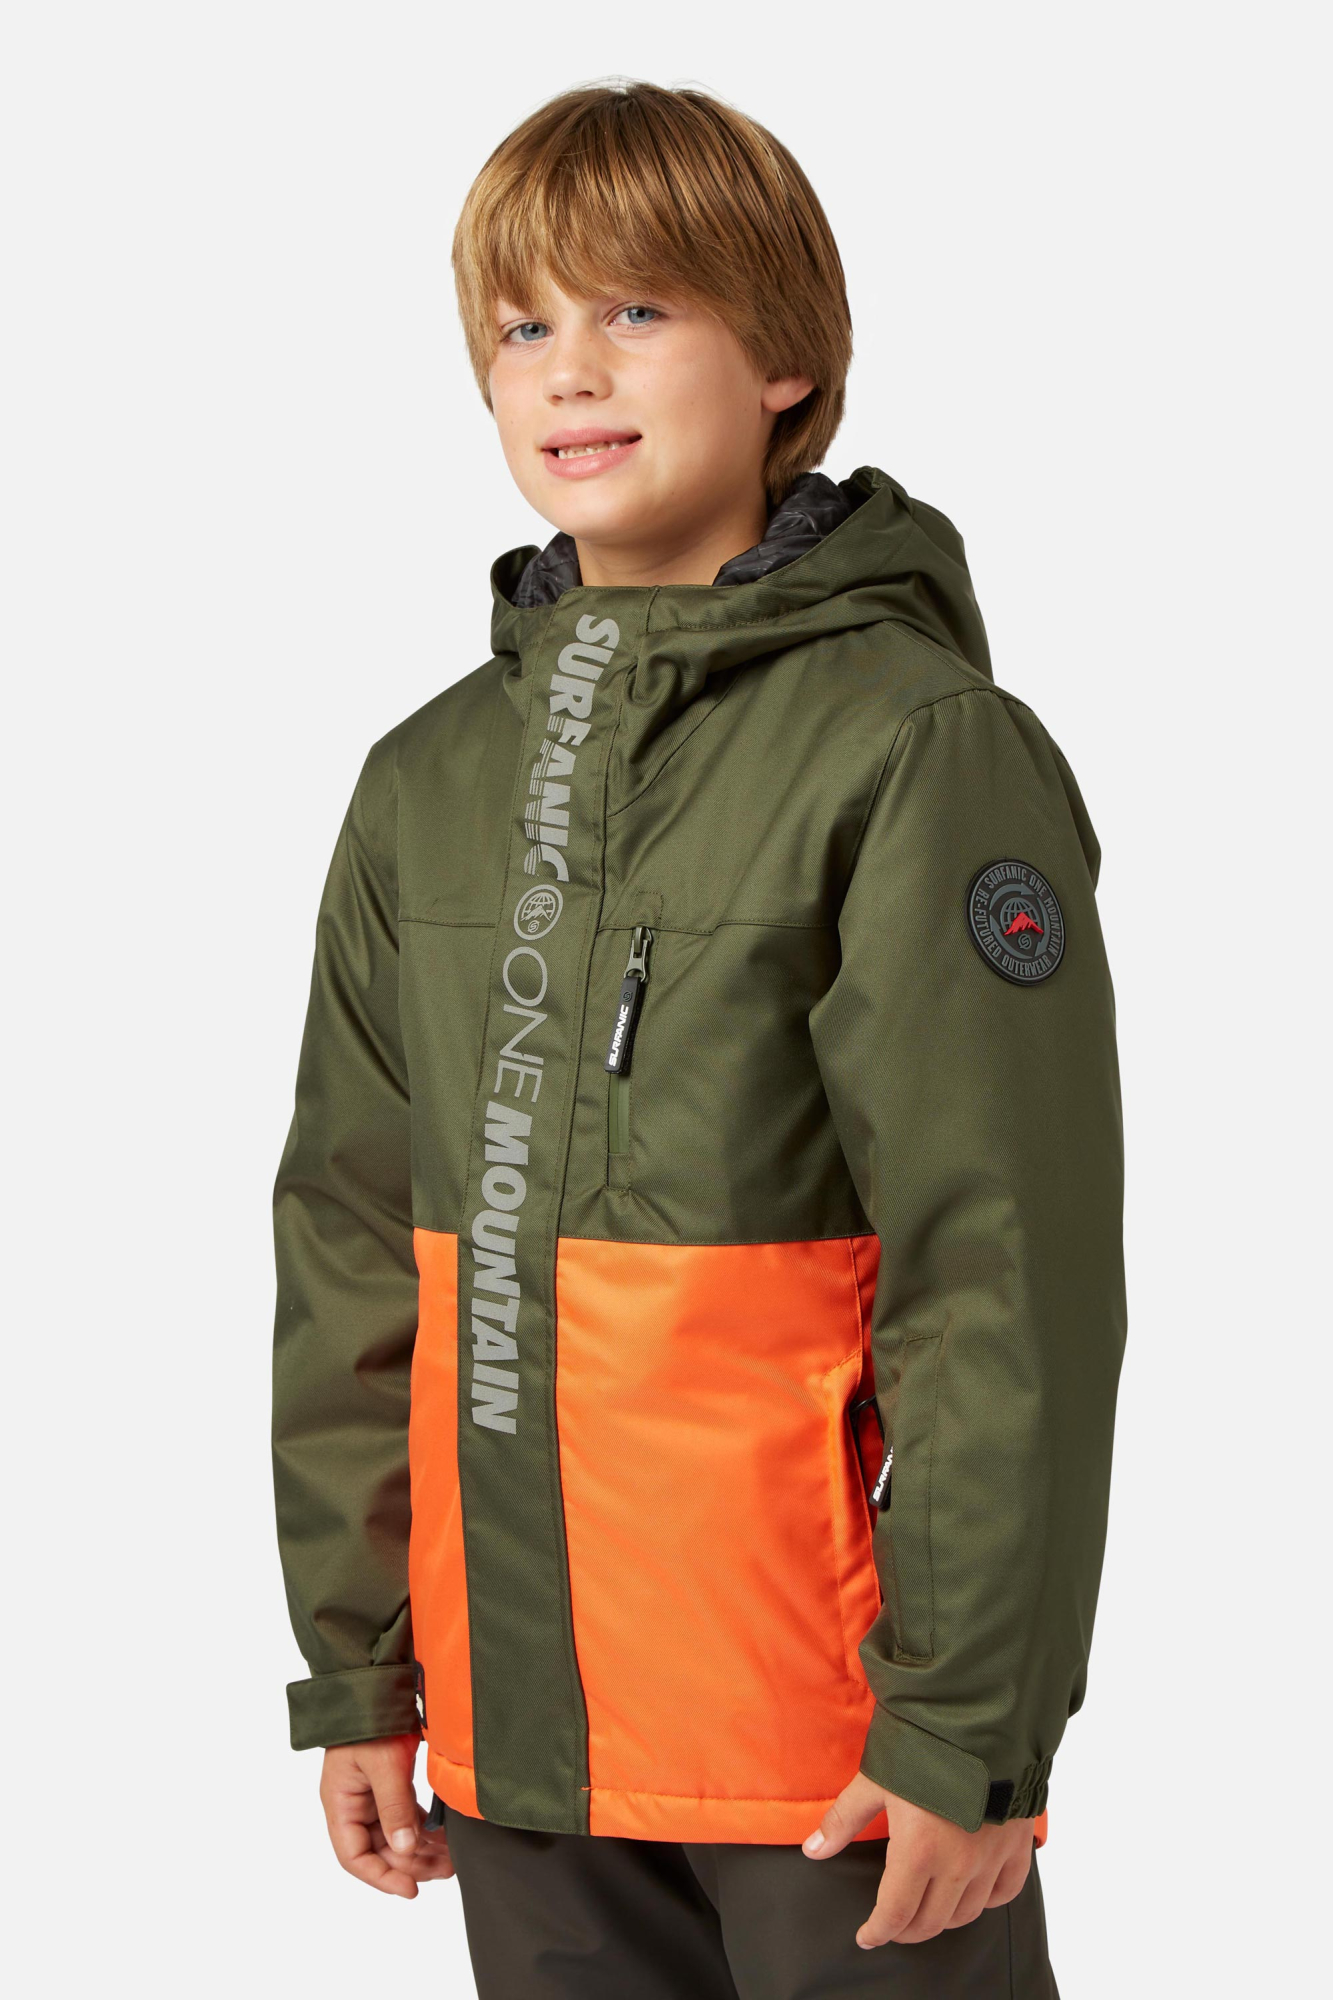 Surfanic Boys Mission Surftex Jacket Orange - Size: 10 Years